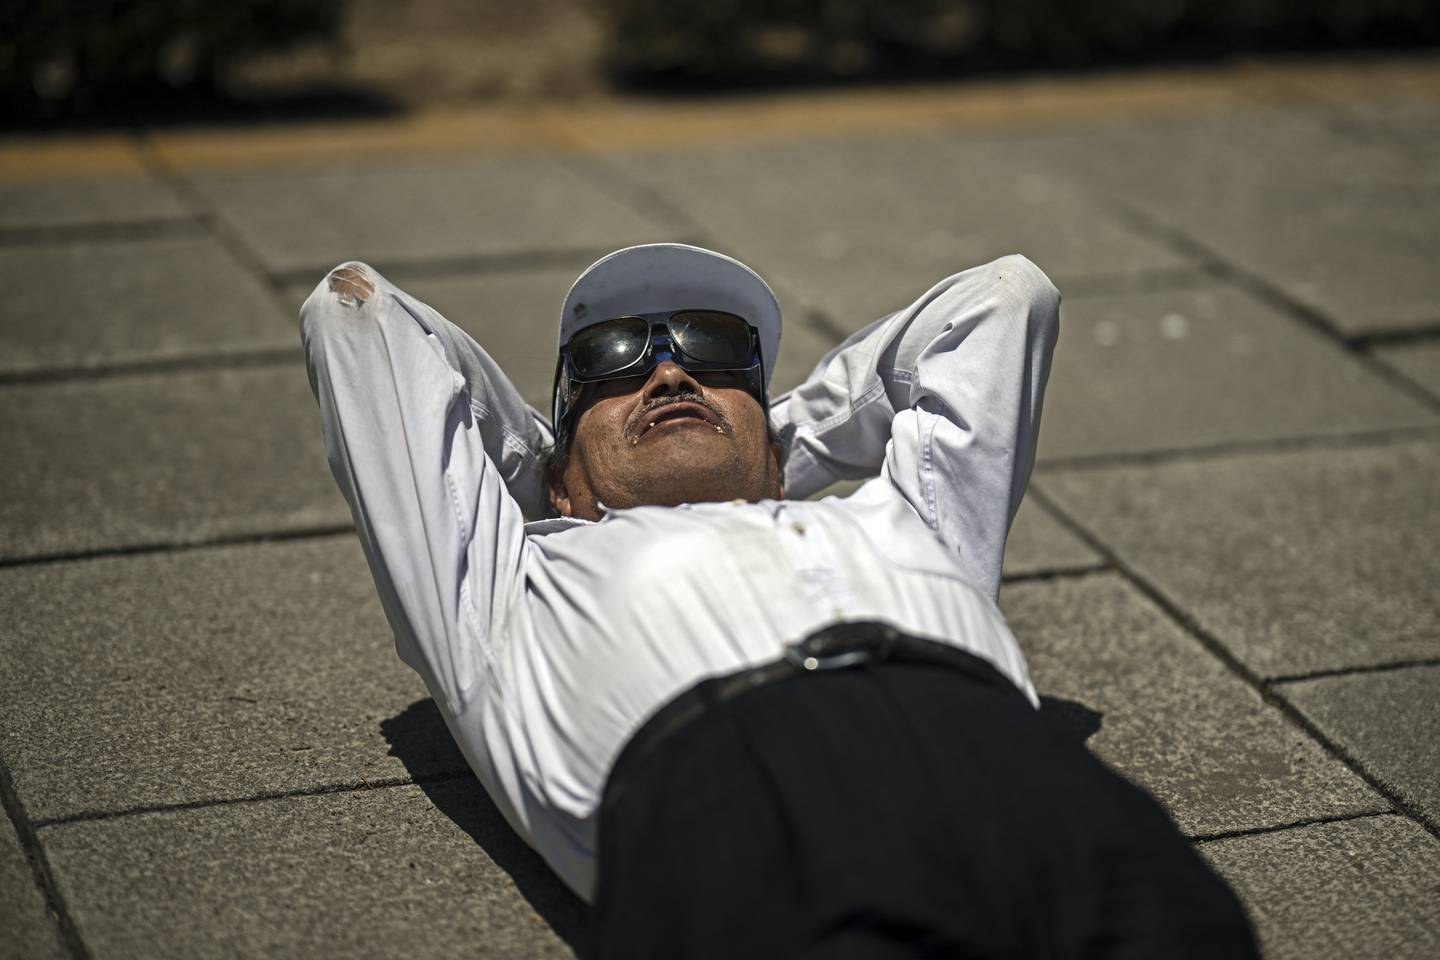 Eclipse total de Sol: las mejores 20 fotos del fenómeno que fascinó a México, Estados Unidos y Canadá | EF